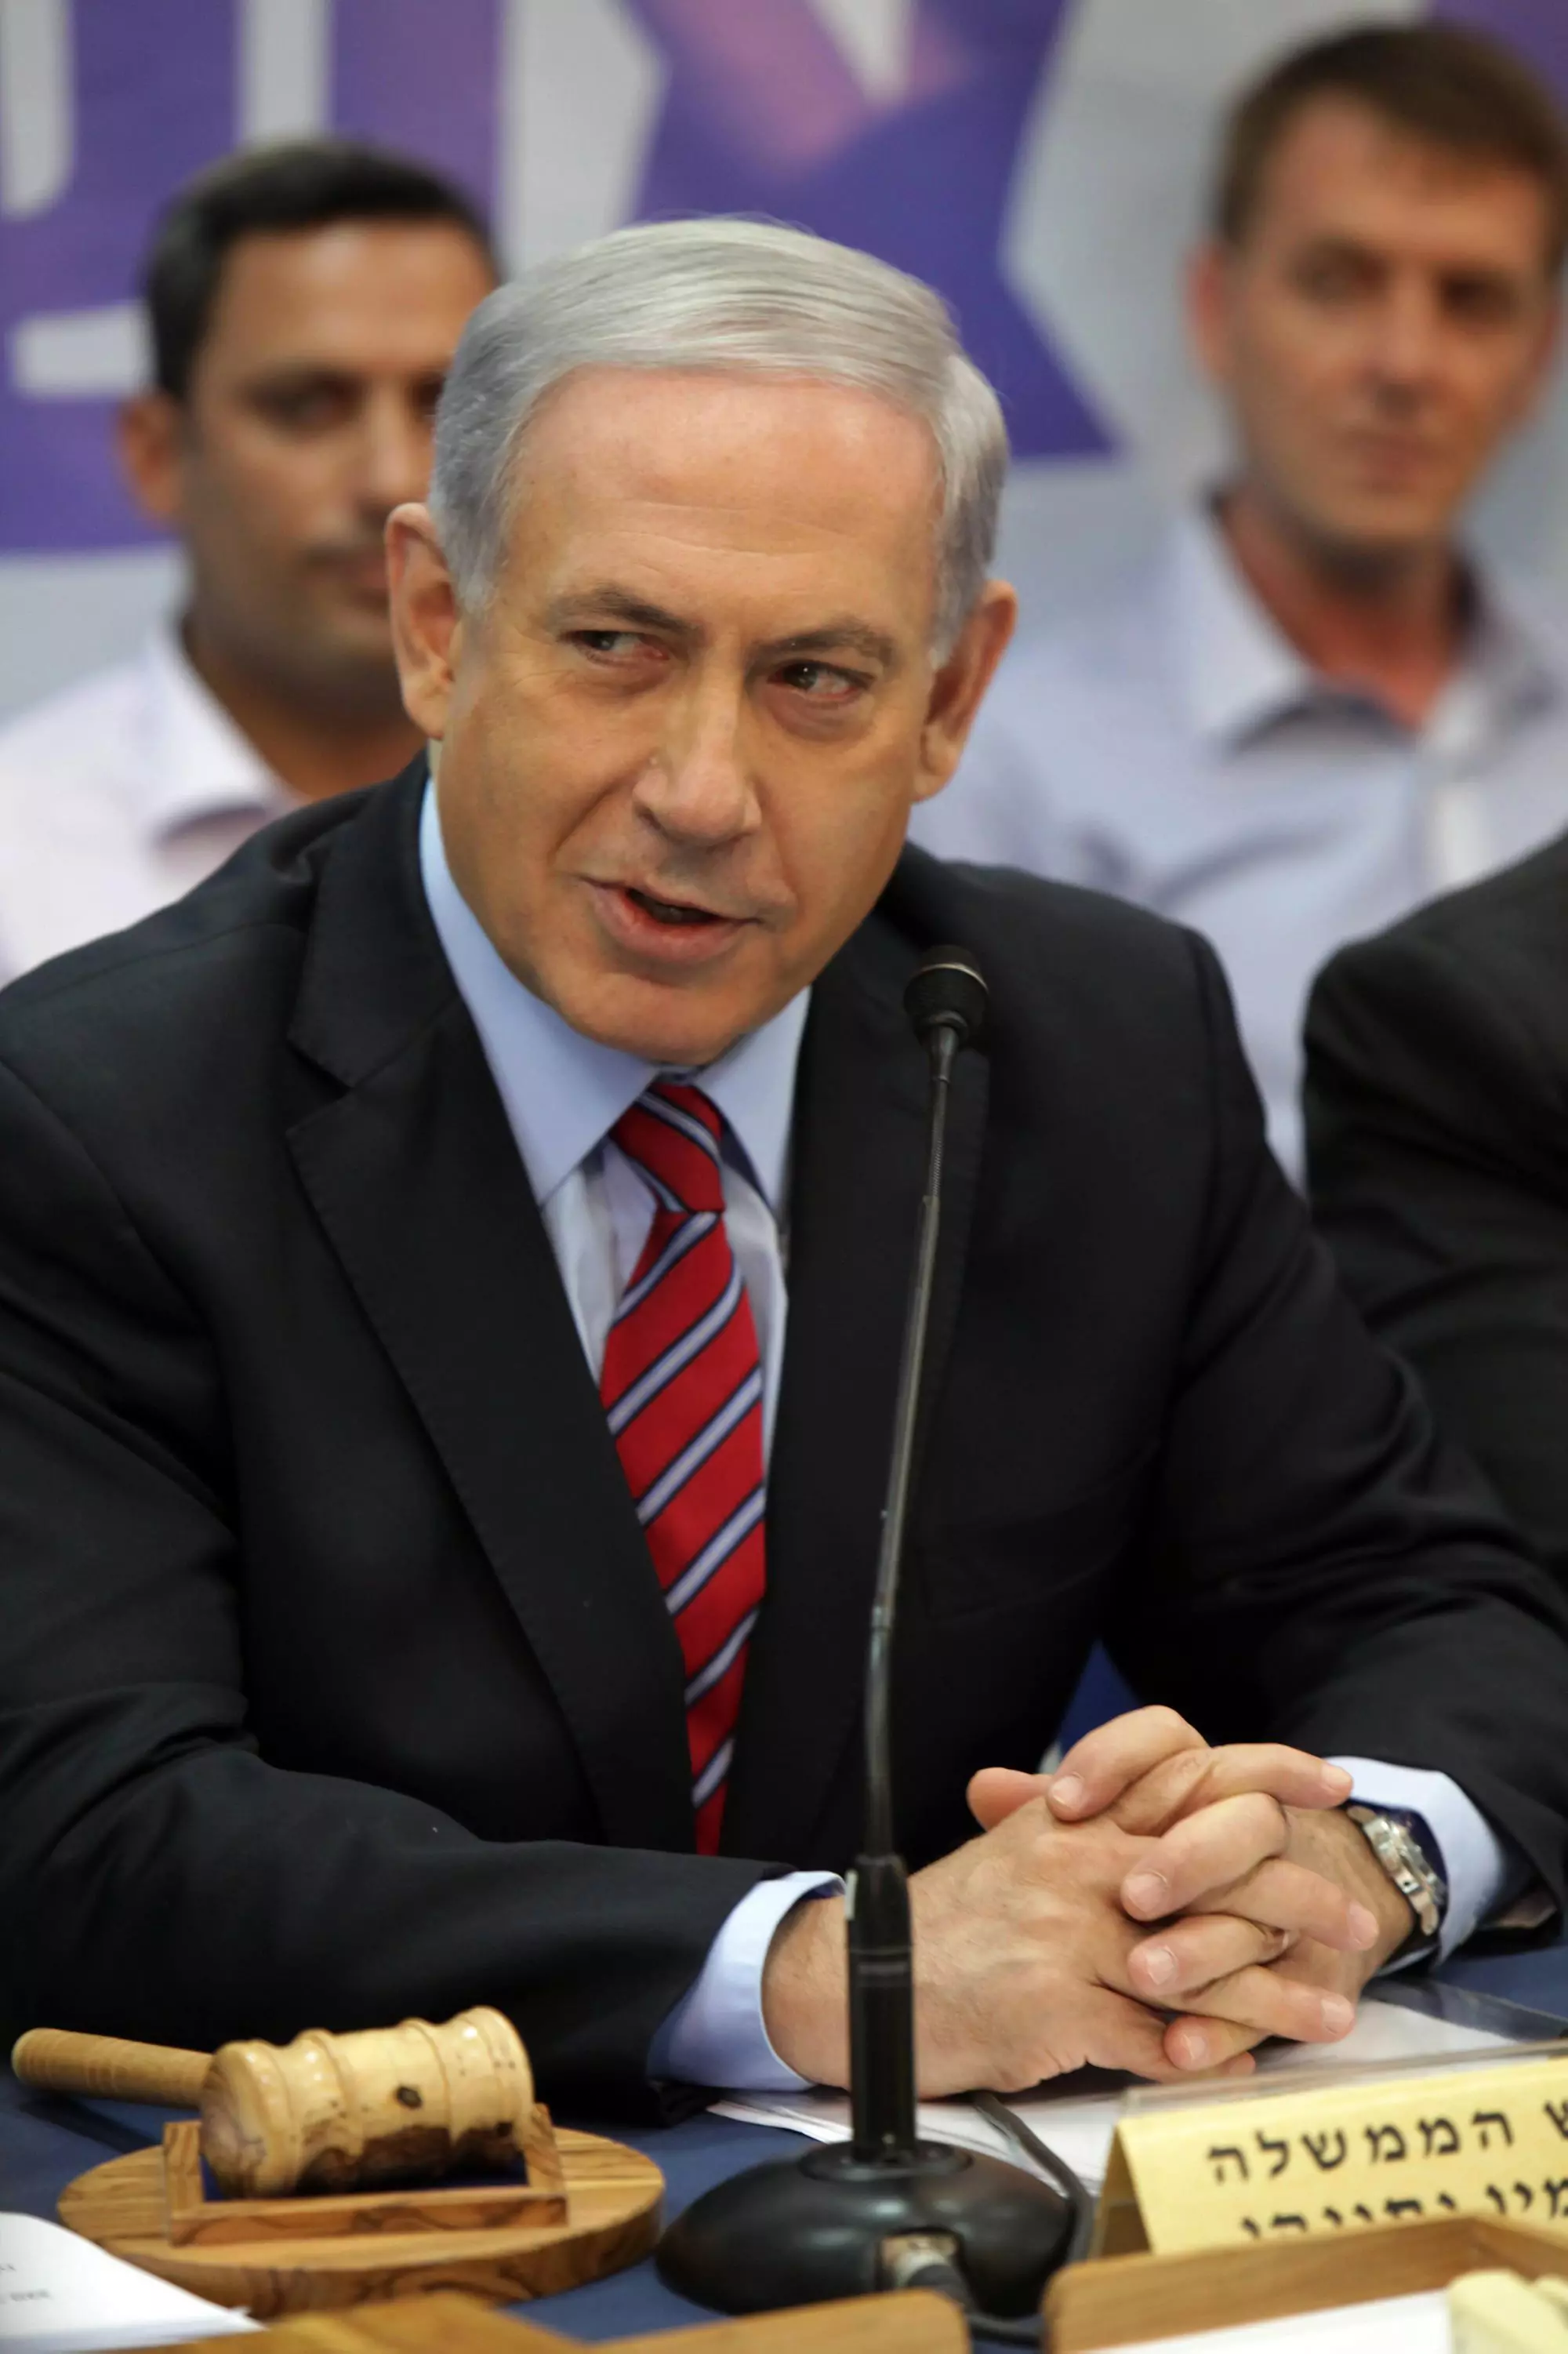 "הוועדה לא נתקלה בהתנגדות מצד ישראל". בנימין נתניהו